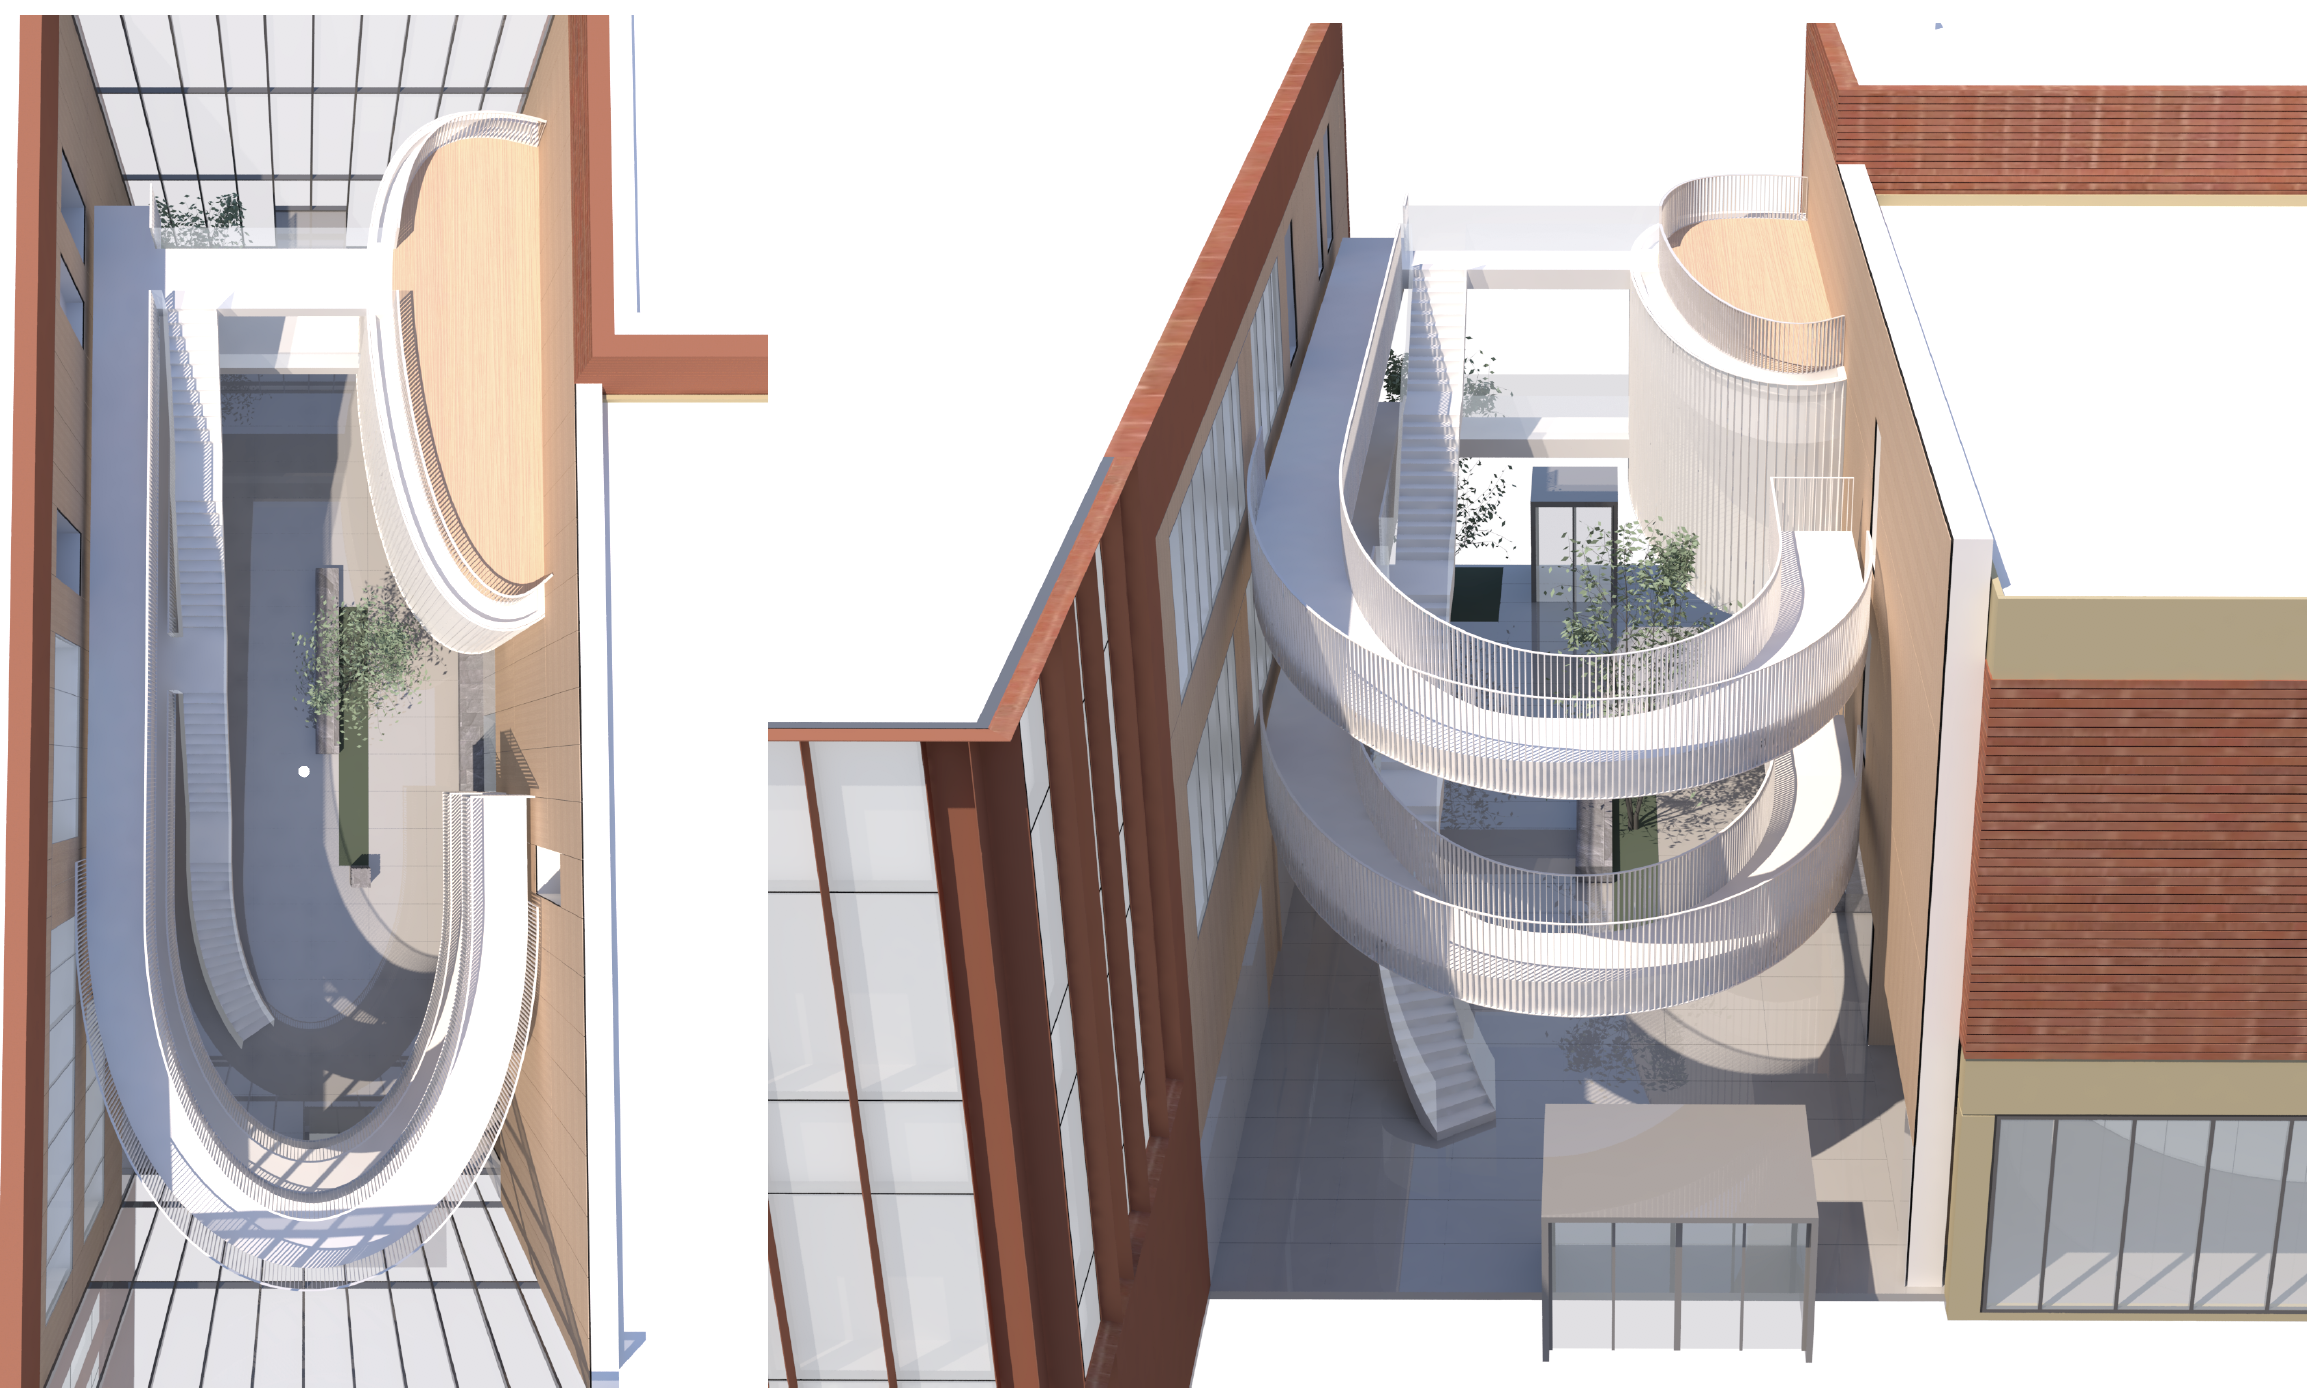 rendering of curved walkways in atrium